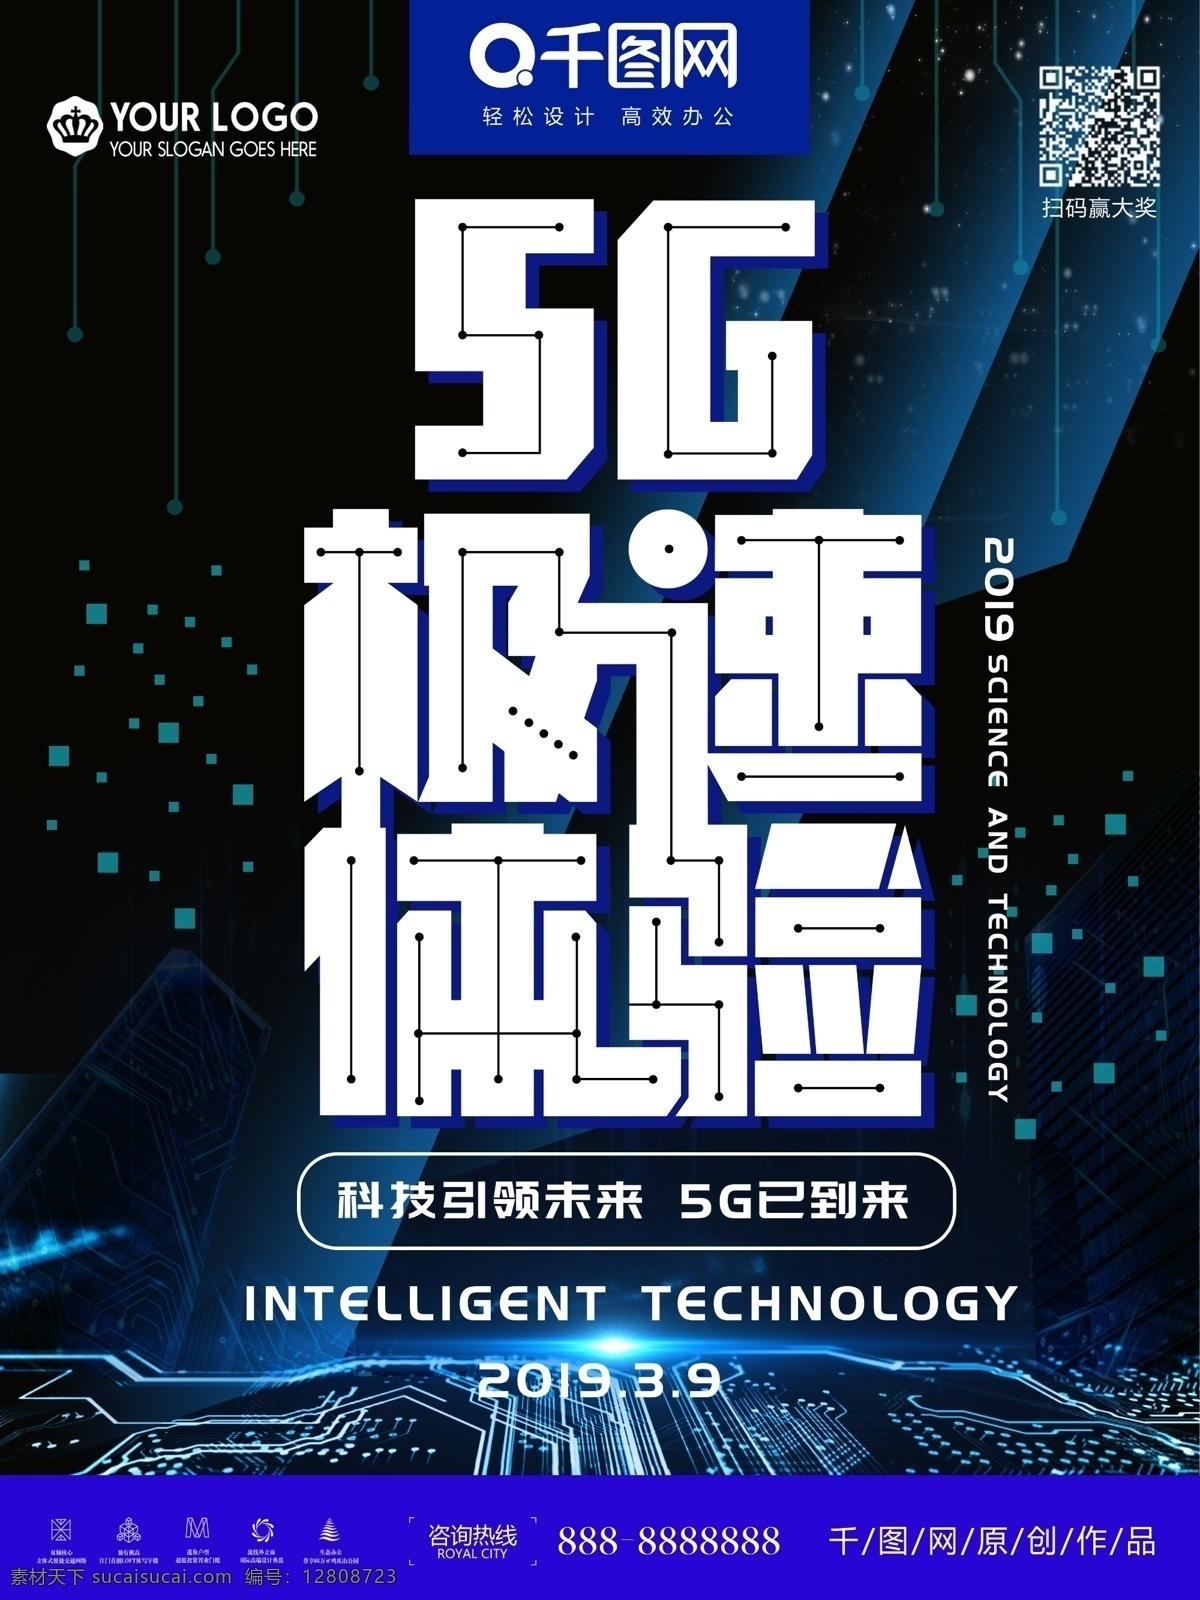 5g 智能 科技 网络 5g网络 5g宣传 5g广告 5g手机网络 5g通讯 5g时代 5g海报 未来科技 5g技术 5g传送 移动5g 3d立体 分层素材 5g来了 5g通信